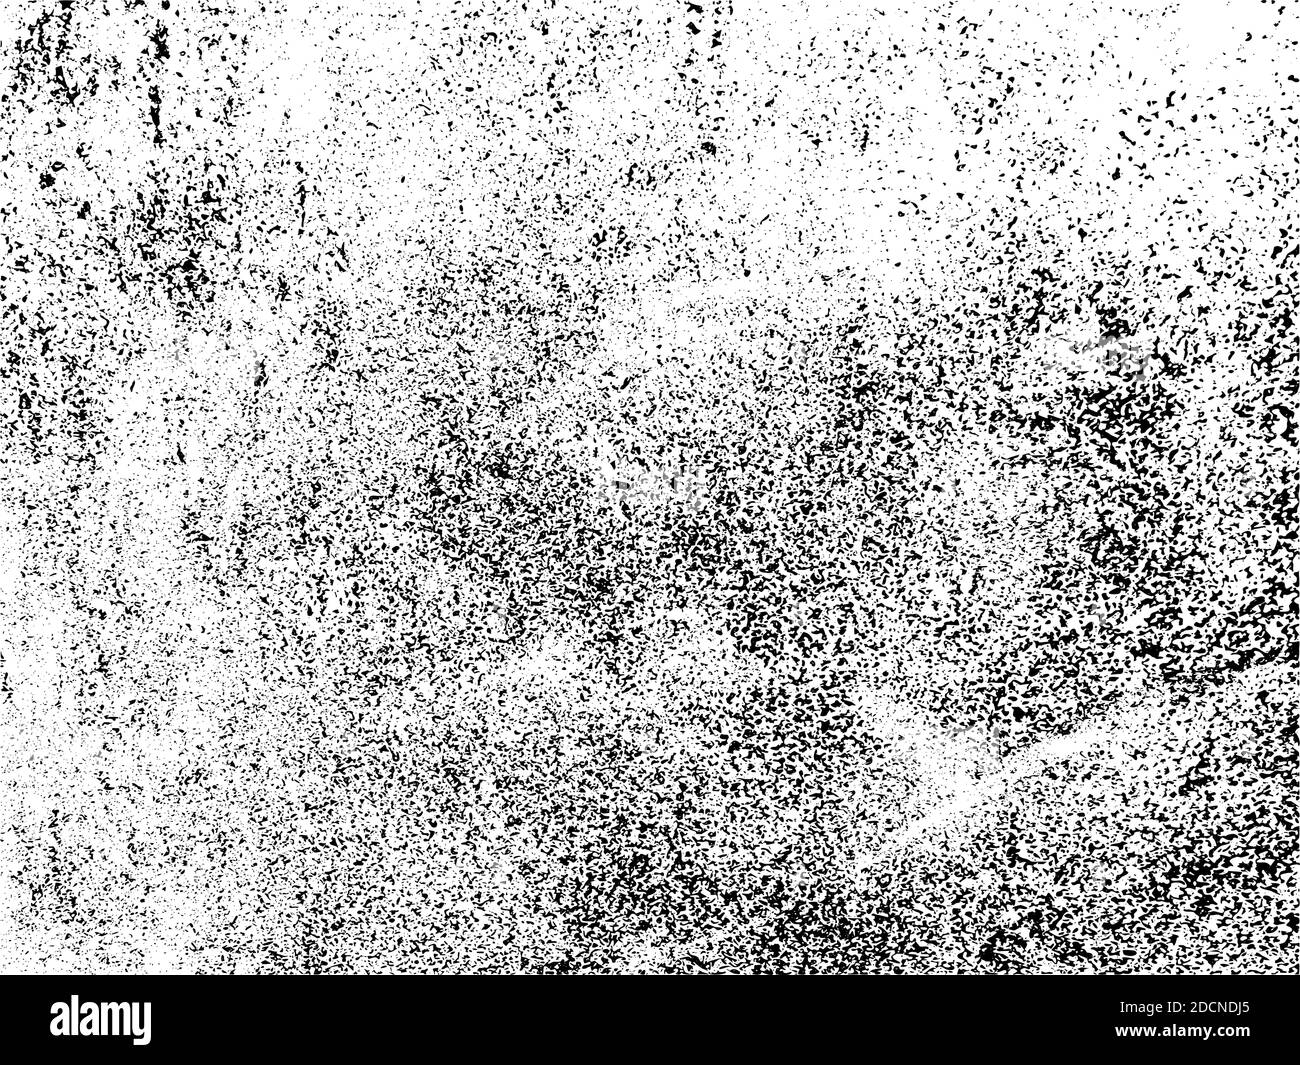 Grunge-Textur. Raue schwarz und weiß abstrakt texturierten Effekt, Distressed schmutzige dunkle grungy Oberfläche, gealterte beschädigte Material Vorlage Vektor-Hintergrund Stock Vektor